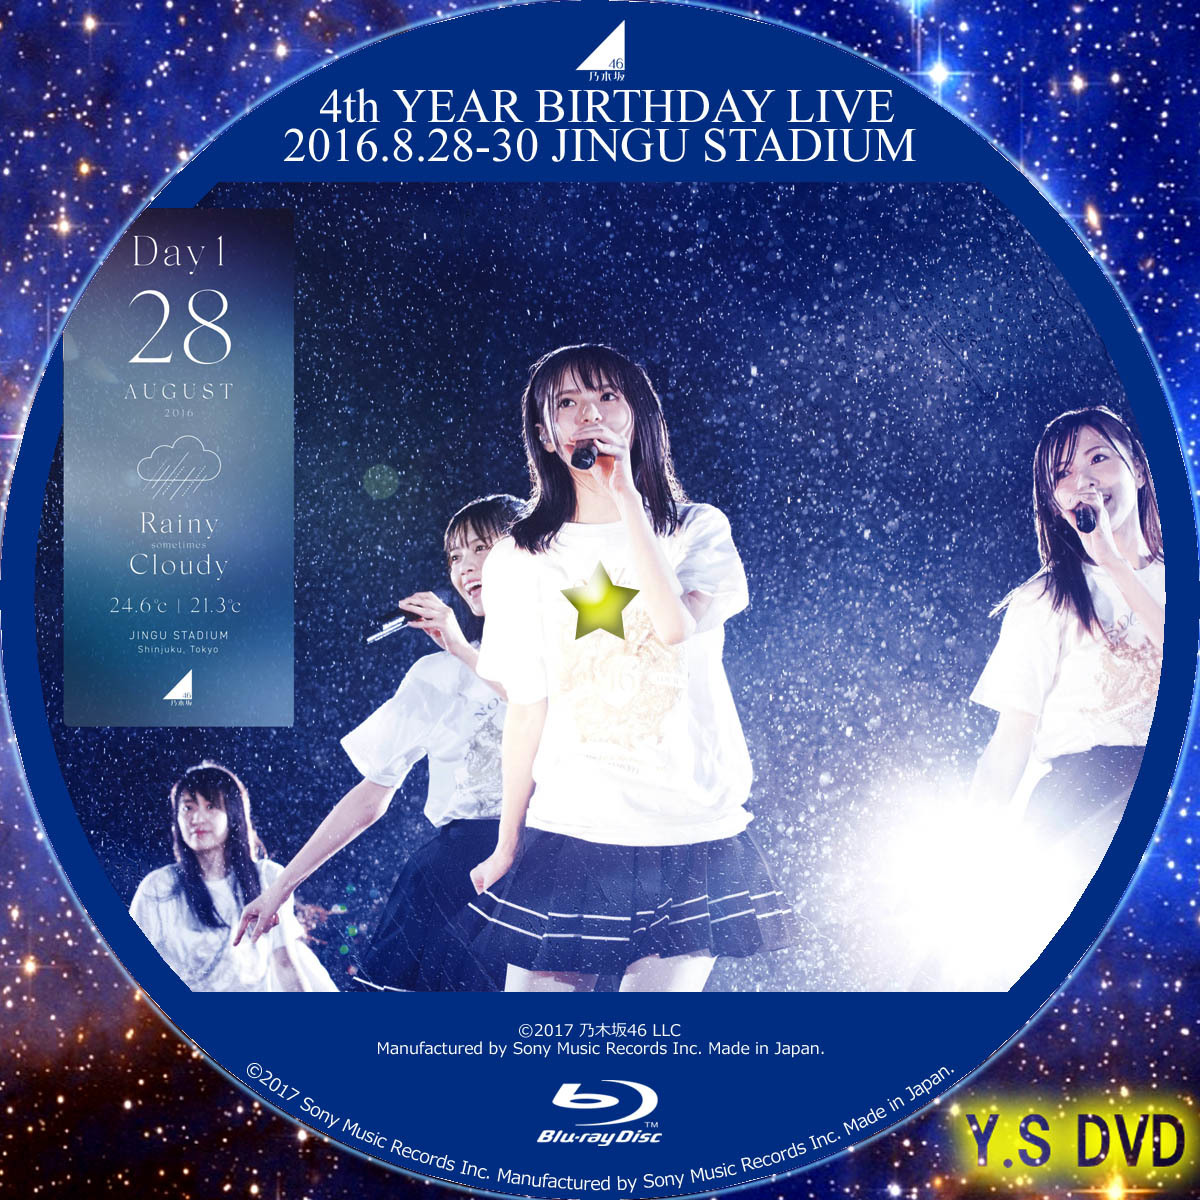 乃木坂46 4th YEAR BIRTHDAY LIVE (完全生産限定盤)B071ZNXGFP 